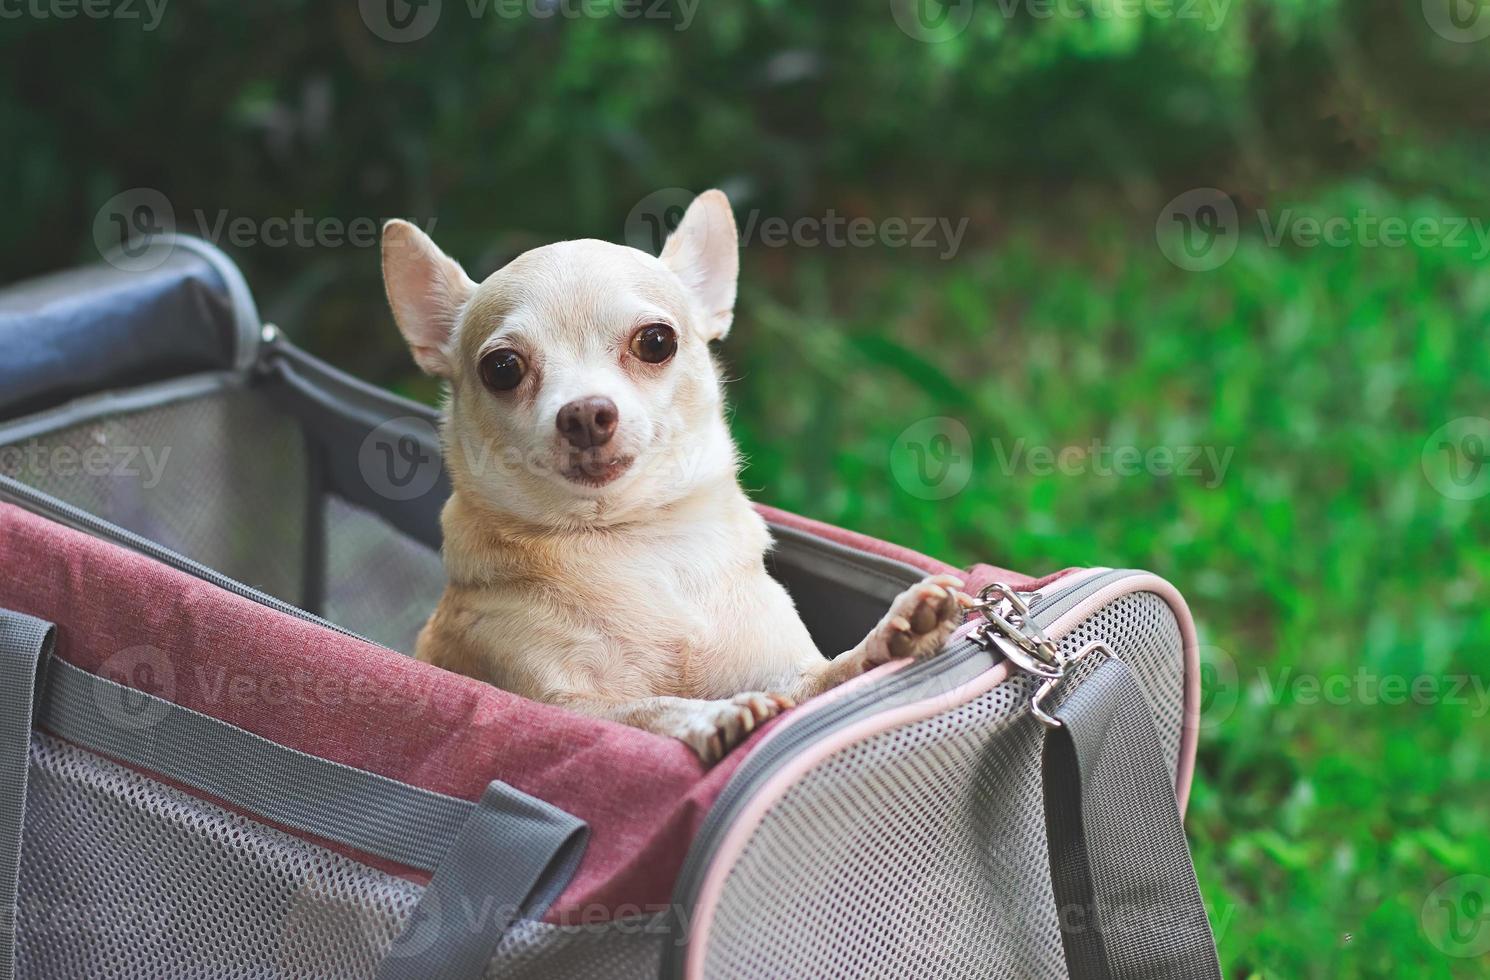 Heureux chien chihuahua brun debout dans un sac de transport pour animaux de compagnie voyageur en tissu rose sur l'herbe verte dans le jardin, souriant. voyager en toute sécurité avec des animaux. photo